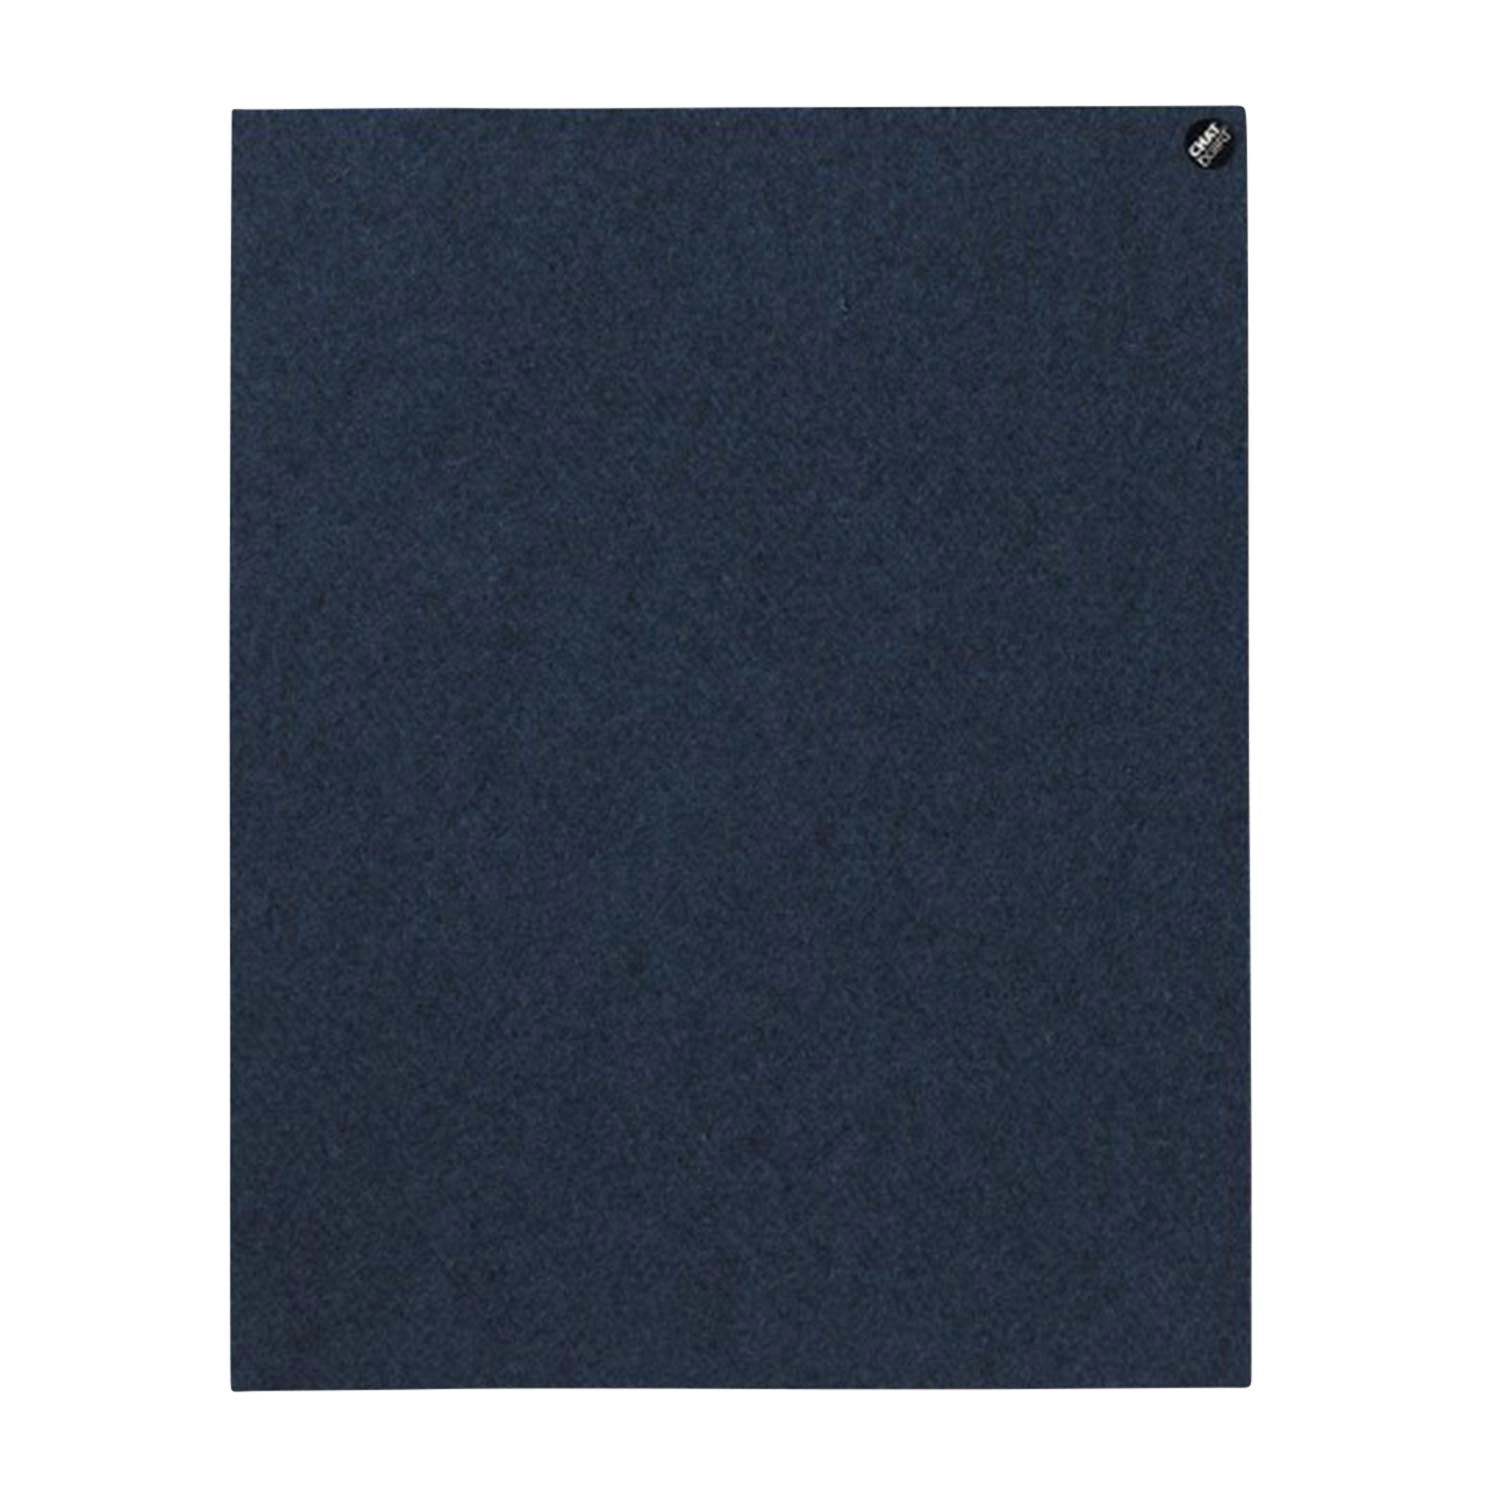 BuzziFelt Pinnwand, Grösse 200 x 100 cm, Ausrichtung vertikal, Buzzifelt (Filz) 60 light blue von Chat Board